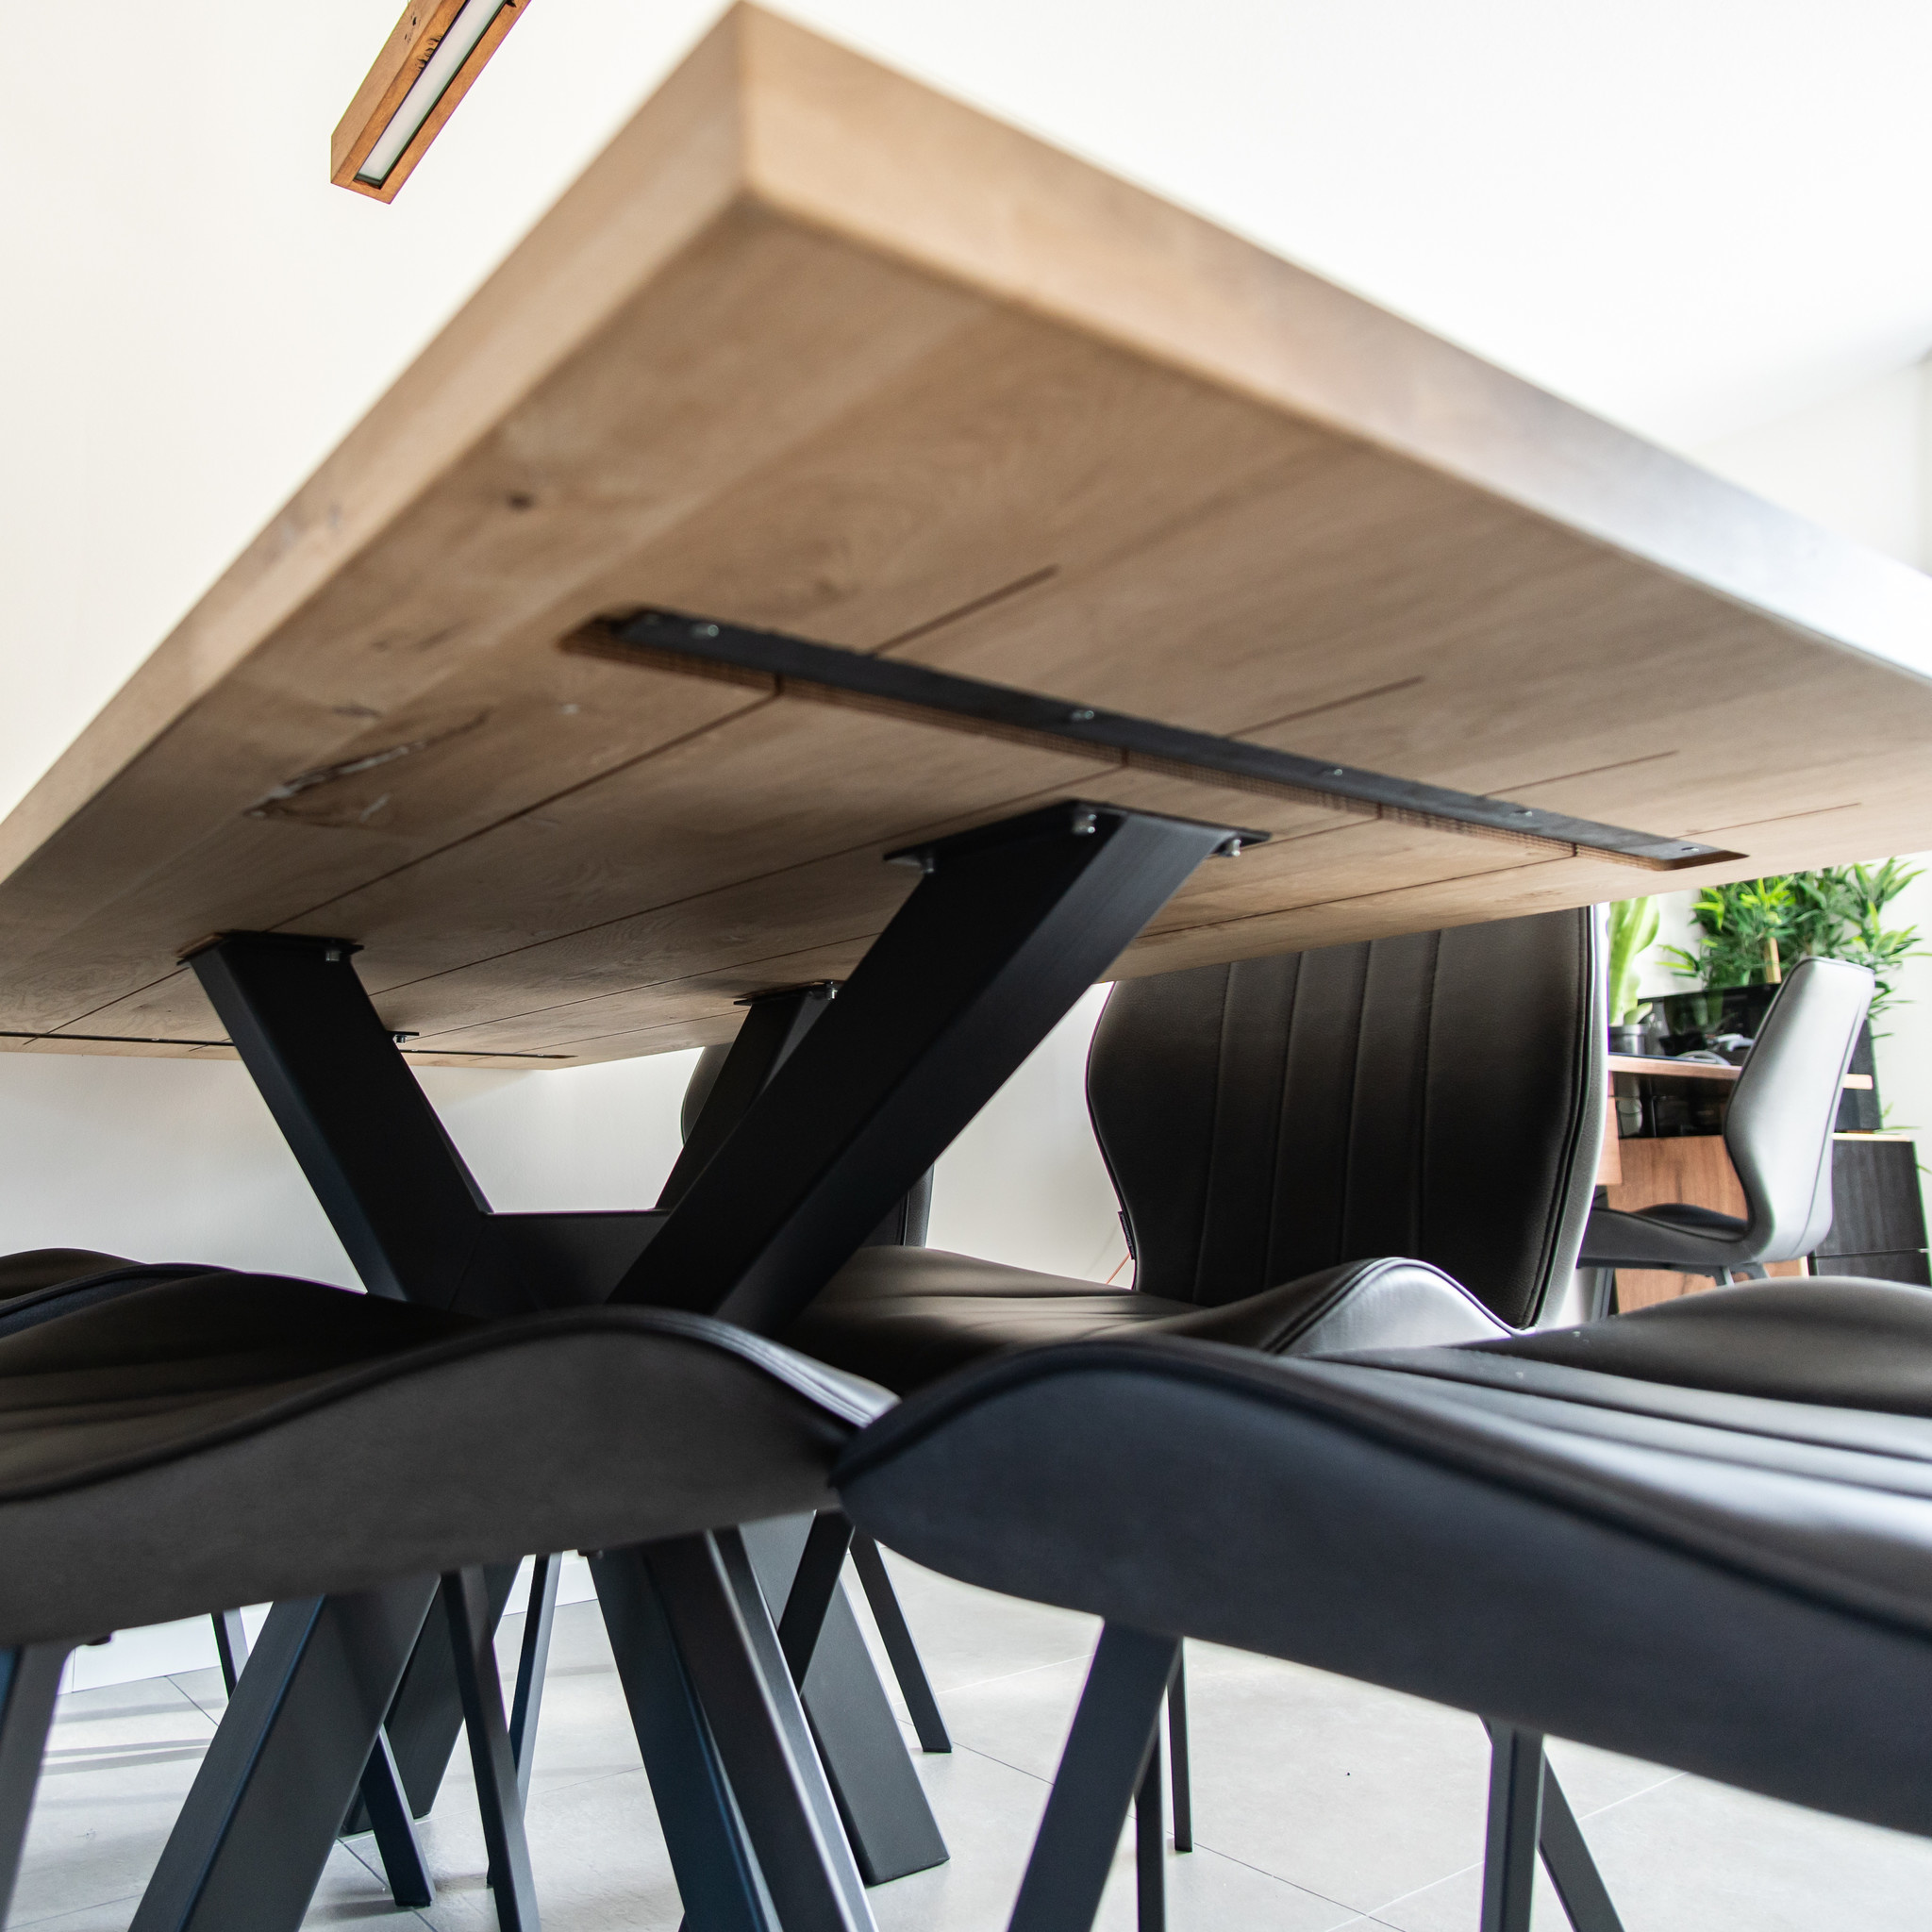  Tischplatte Eiche nach Maß - 5 cm dick (2-lagig) - Eichenholz rustikal - Eiche Tischplatte massiv - verleimt & künstlich getrocknet (HF 8-12%) - 50-120x50-350 cm